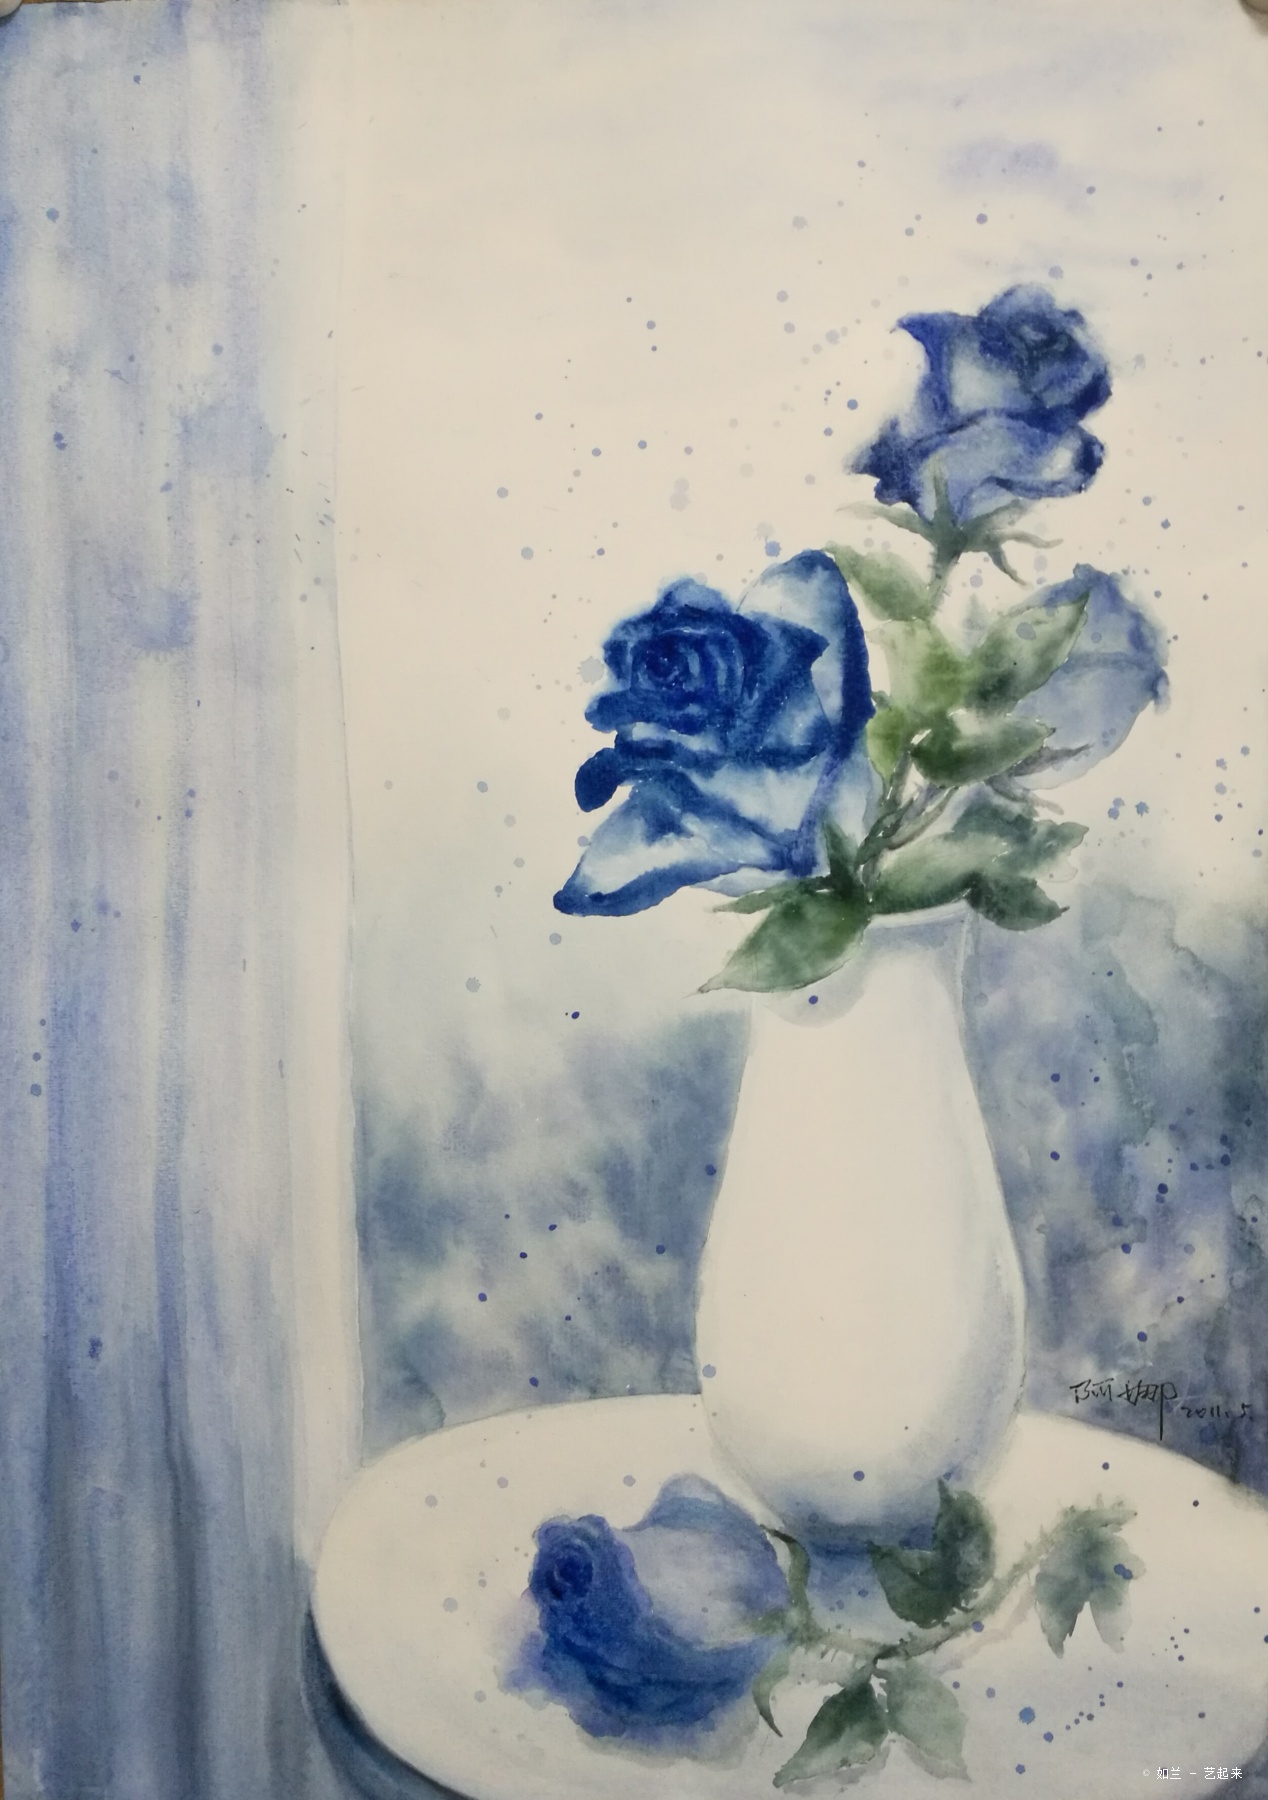 蓝玫瑰,如兰, 2012年纸张水彩.粉画 | 艺起来 - topart.